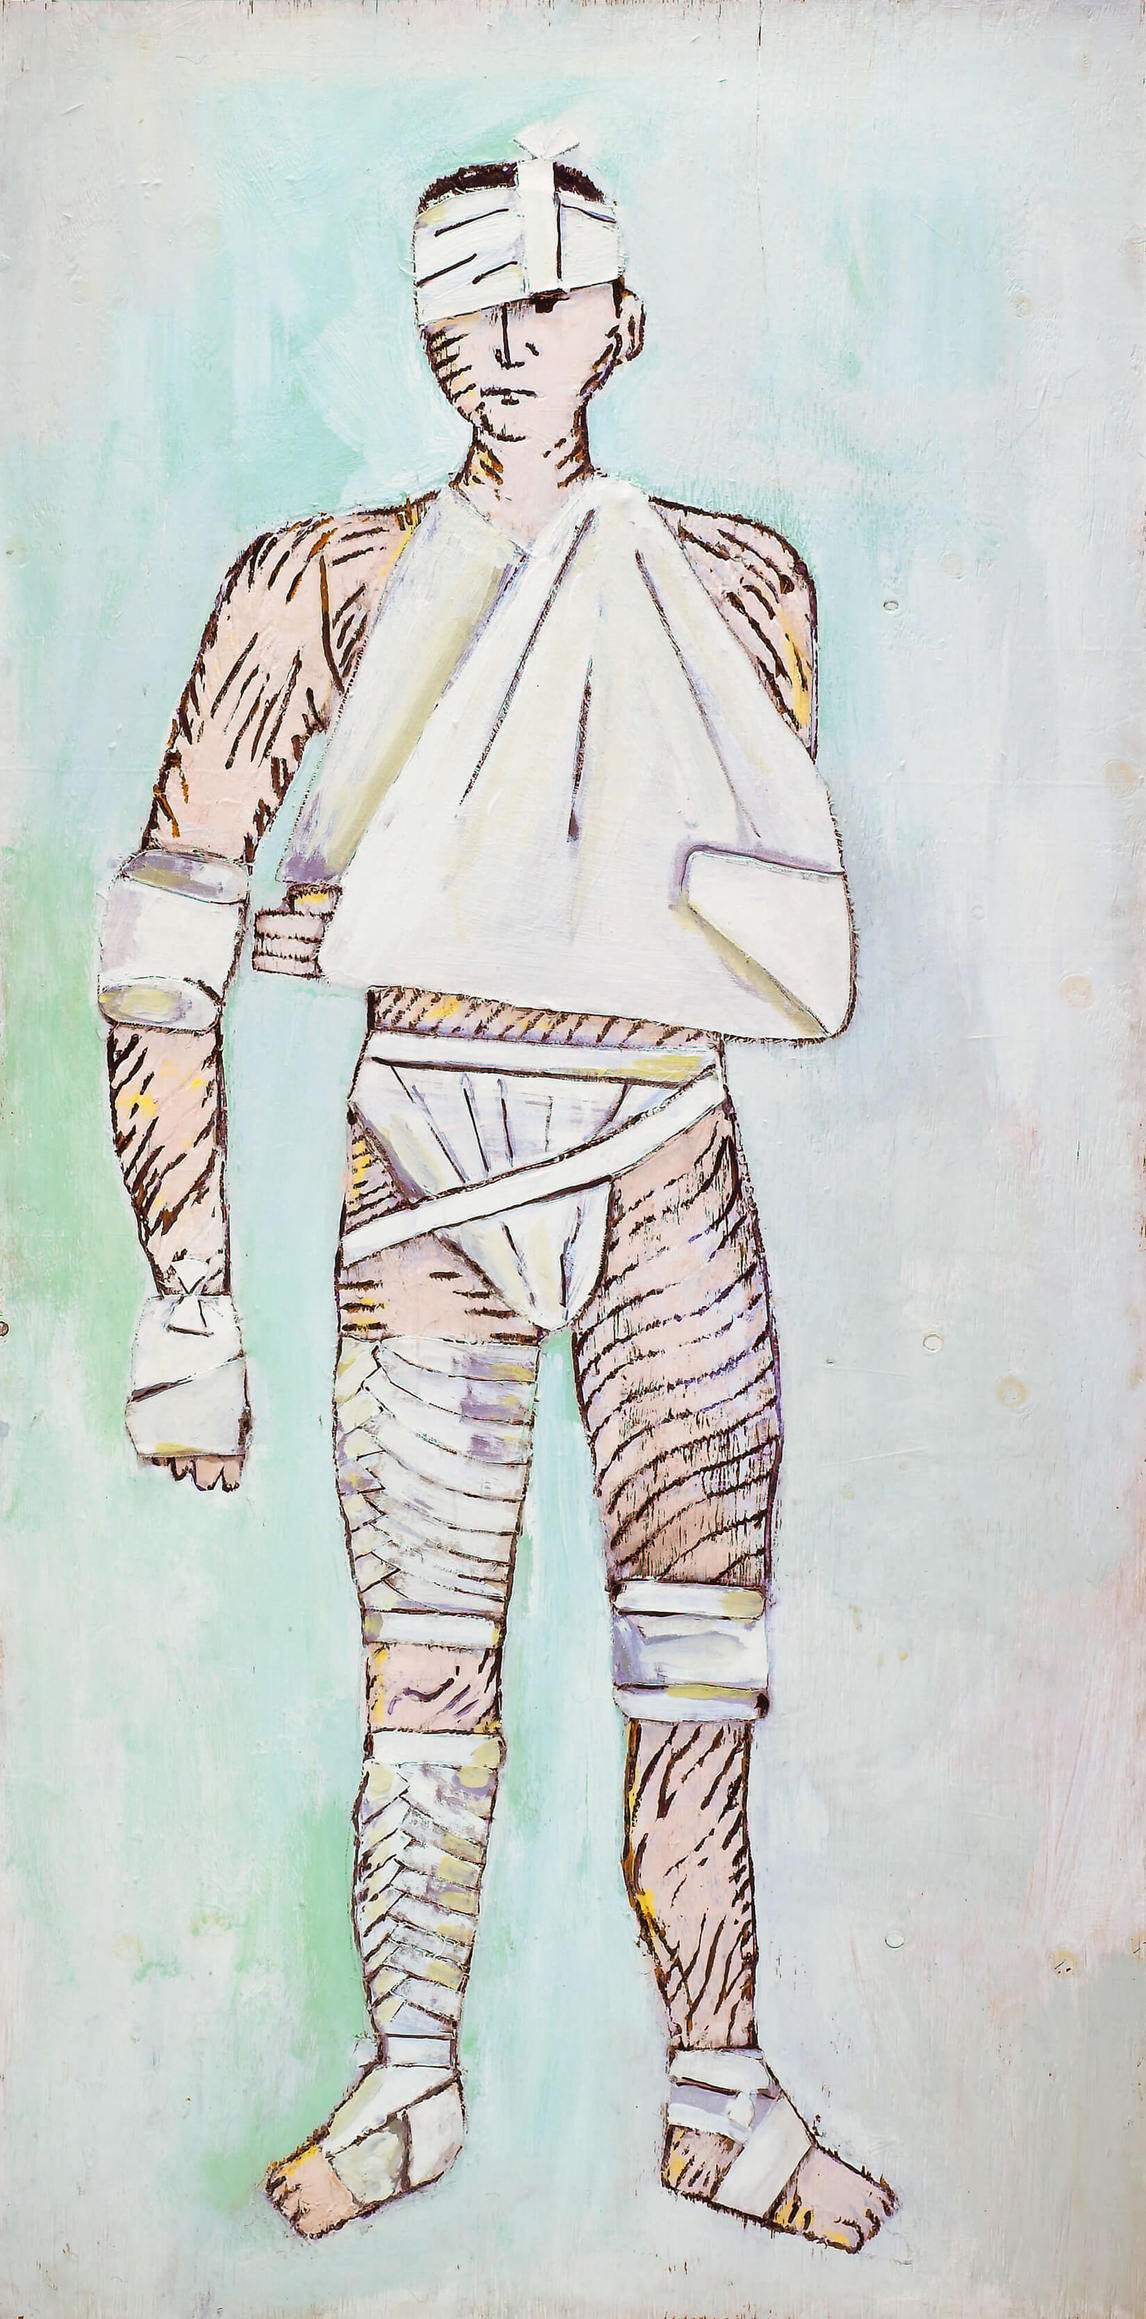 Paterson Ewen, The Bandaged Man (L’homme aux bandages), 1973